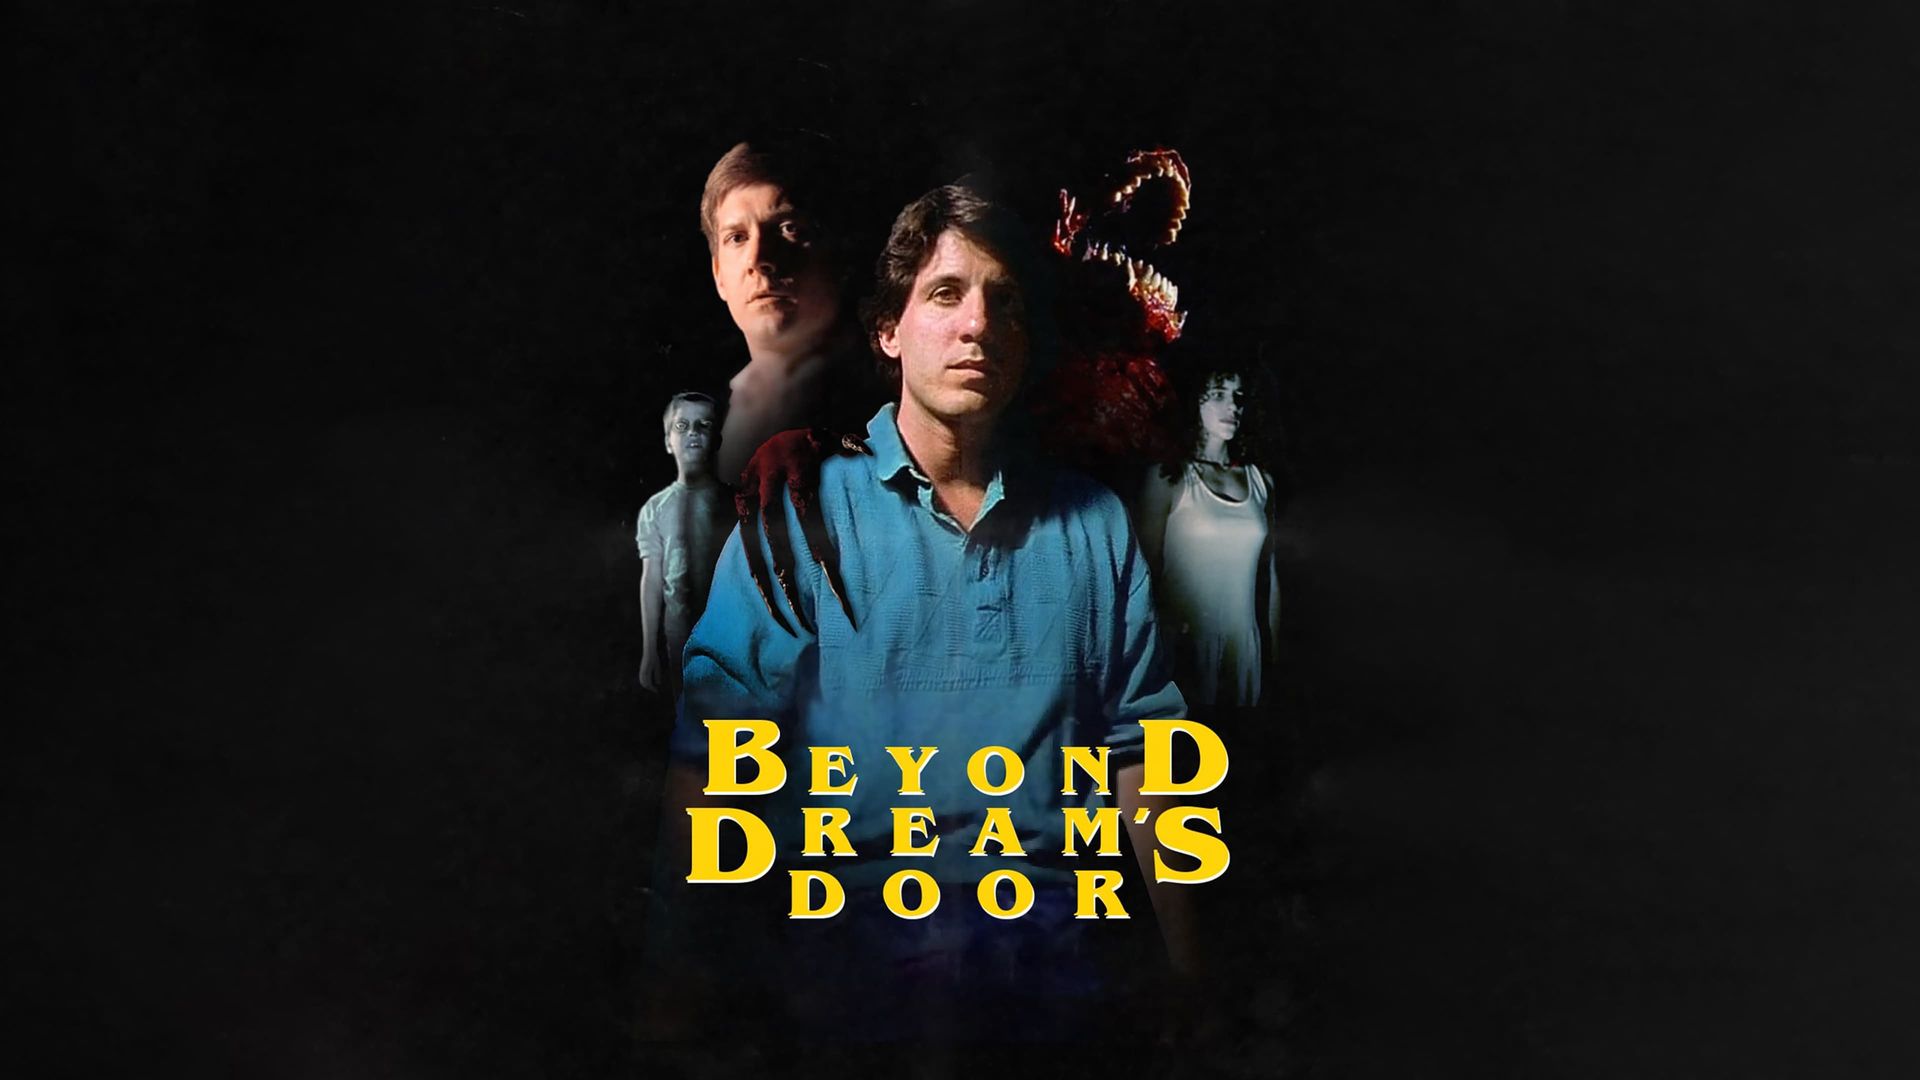 Beyond Dream's Door background